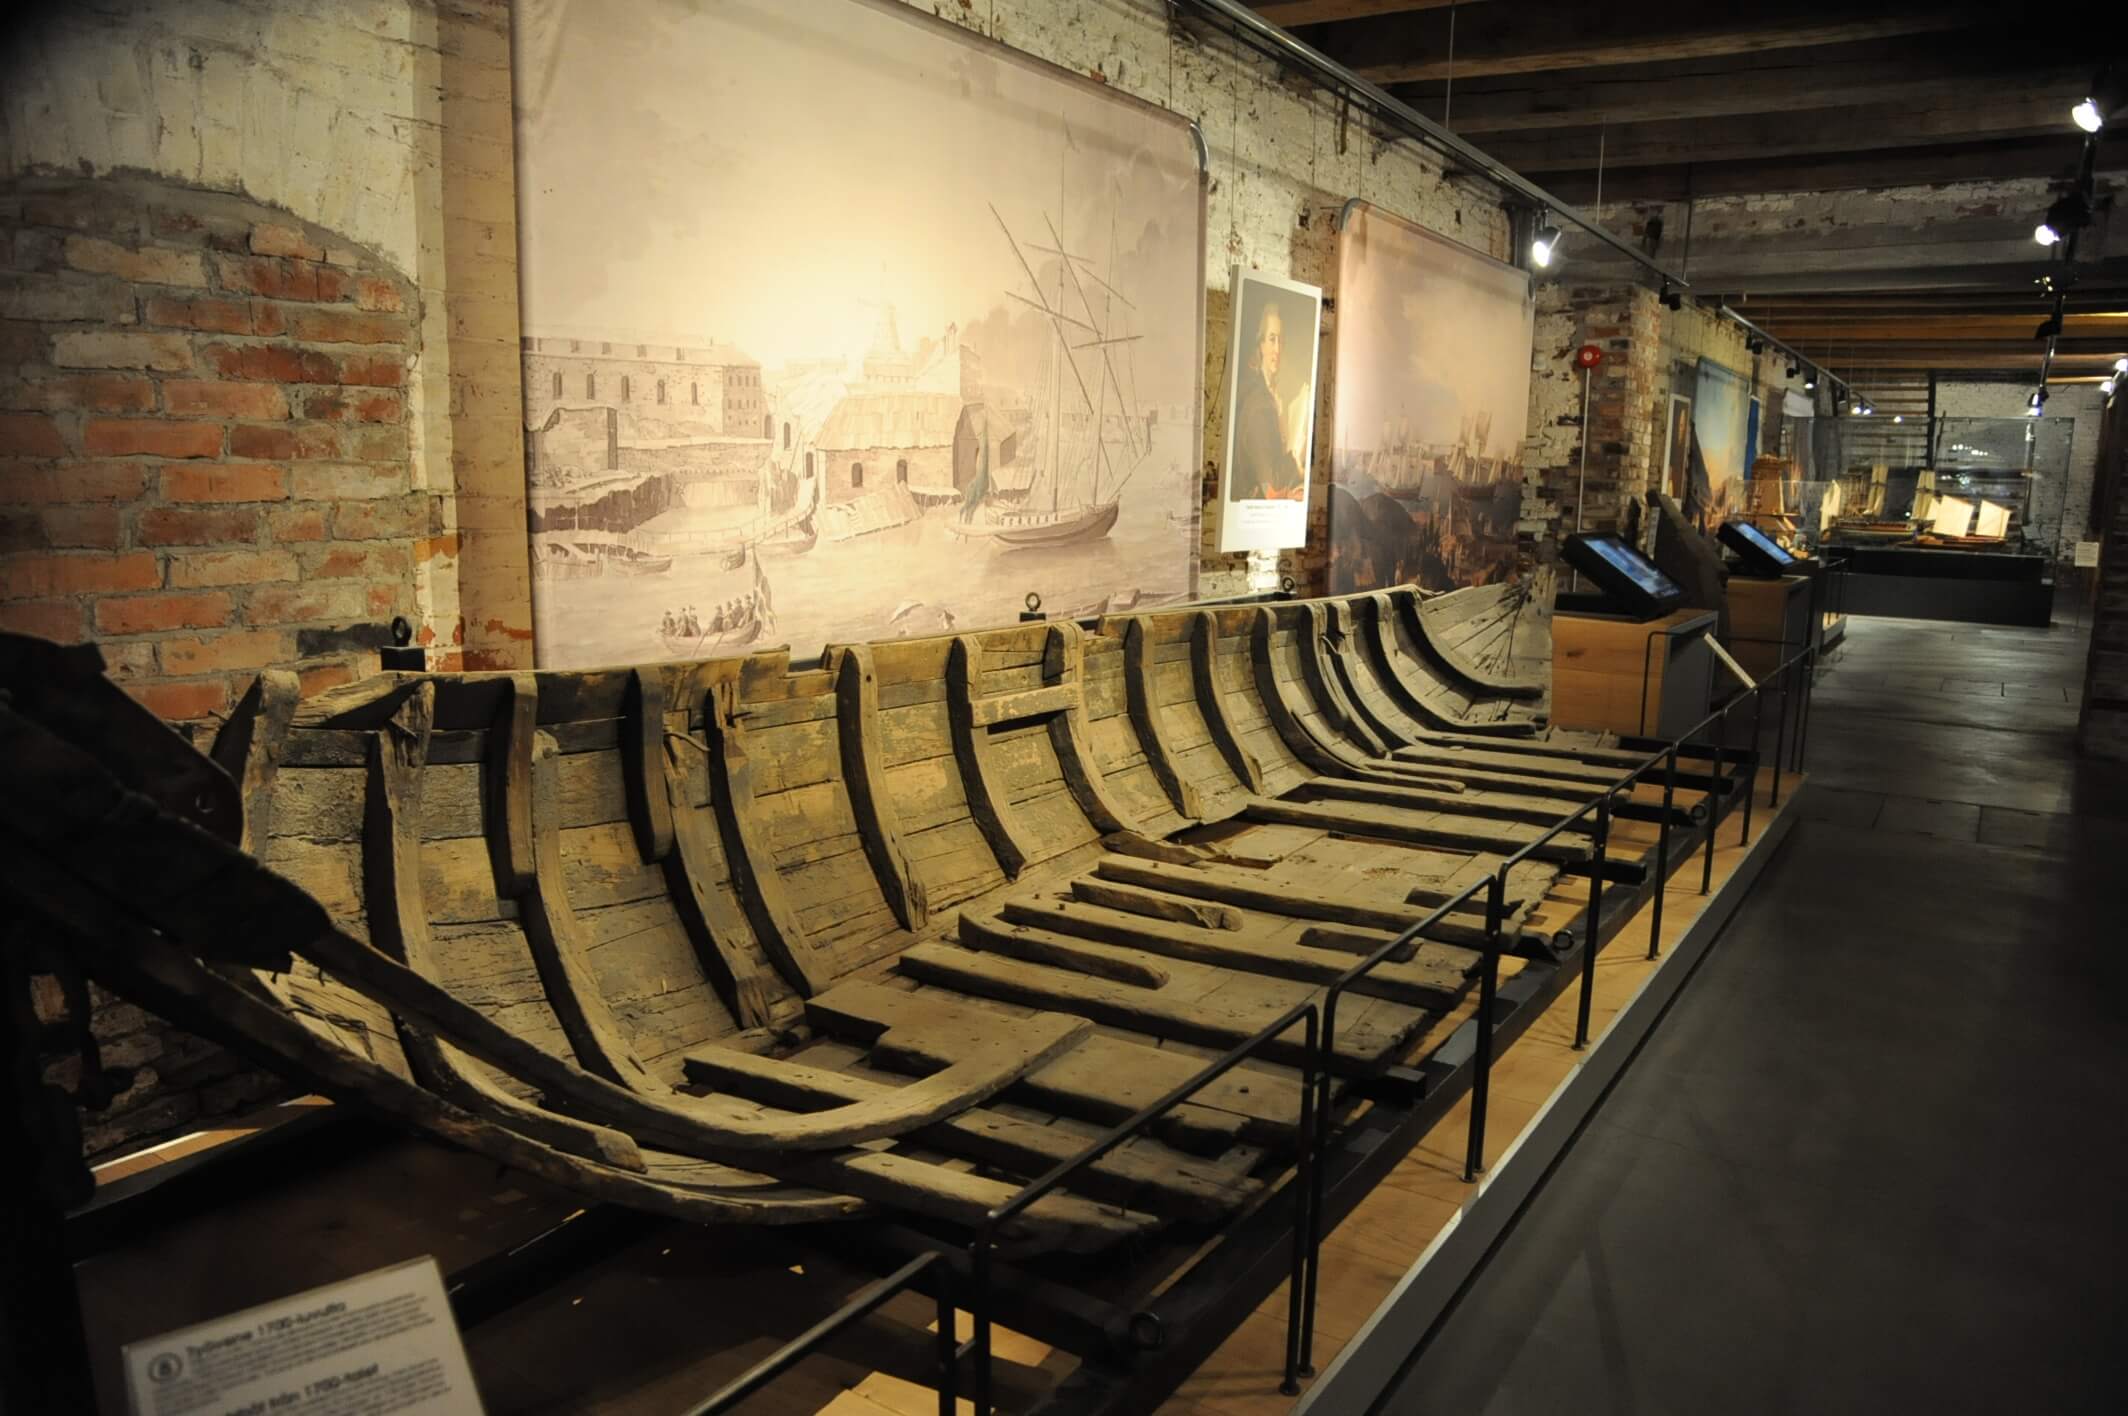 スオメンリンナ博物館の内部。造船の模型と思われる